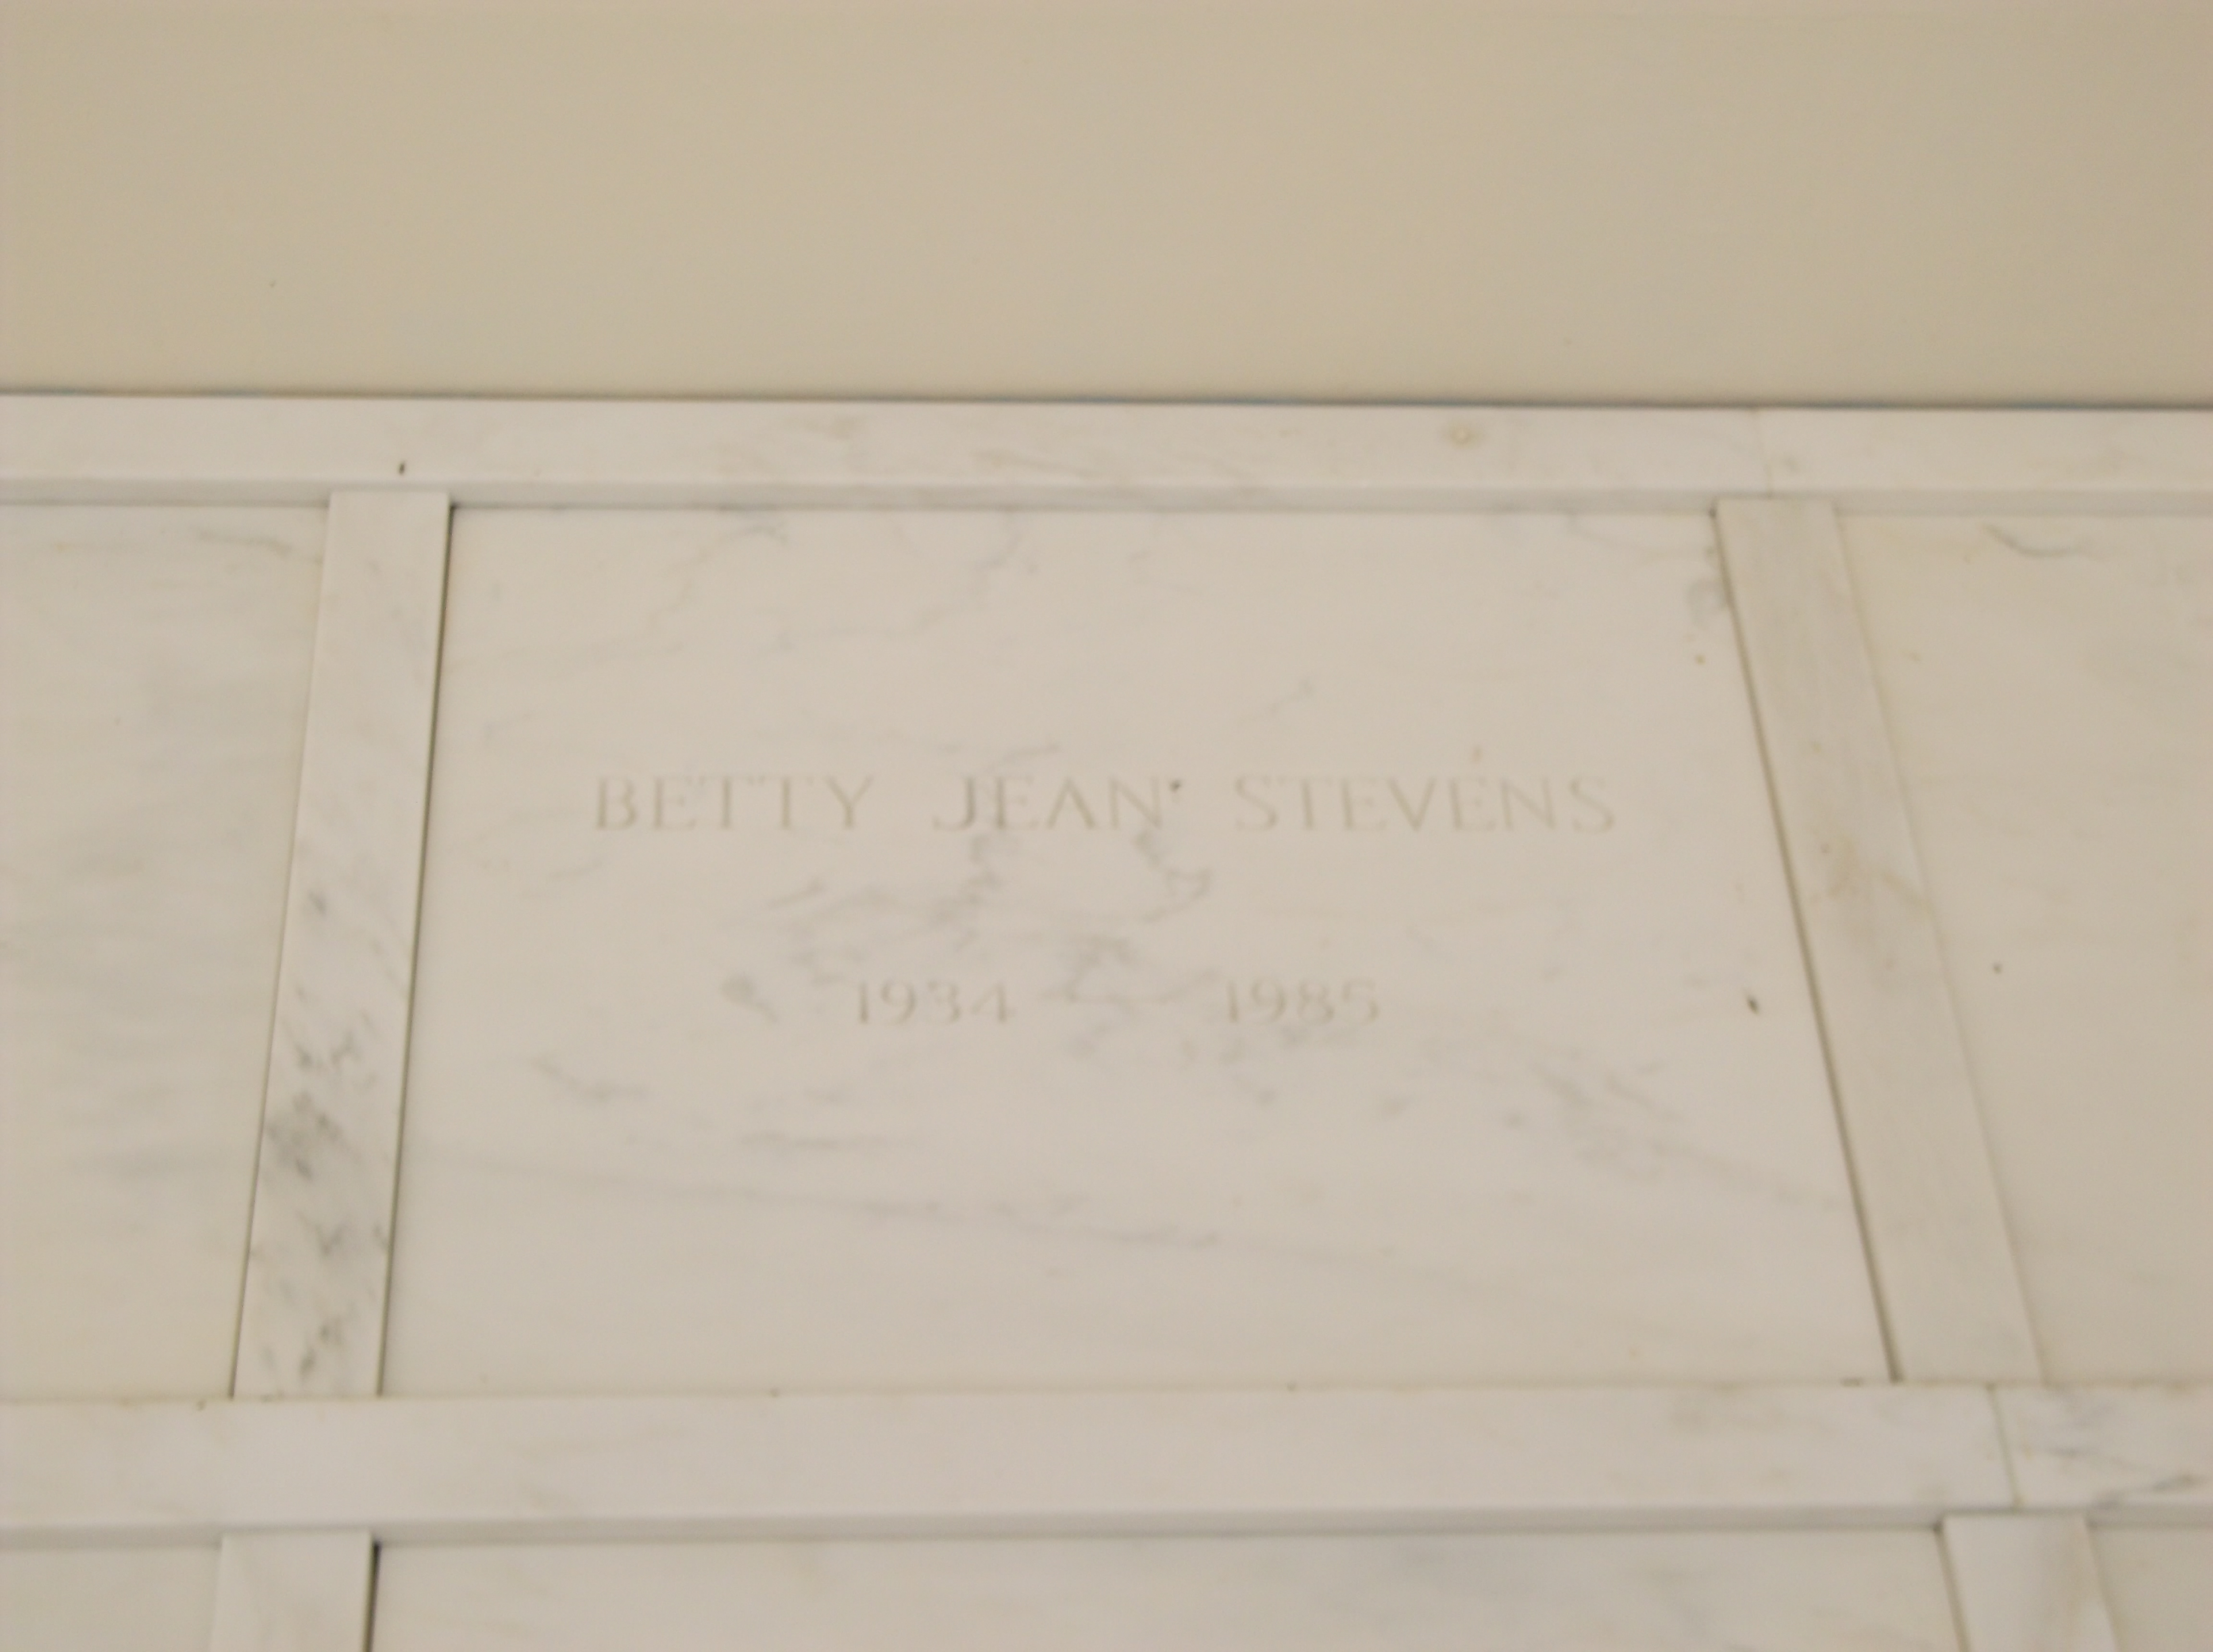 Betty Jean Stevens